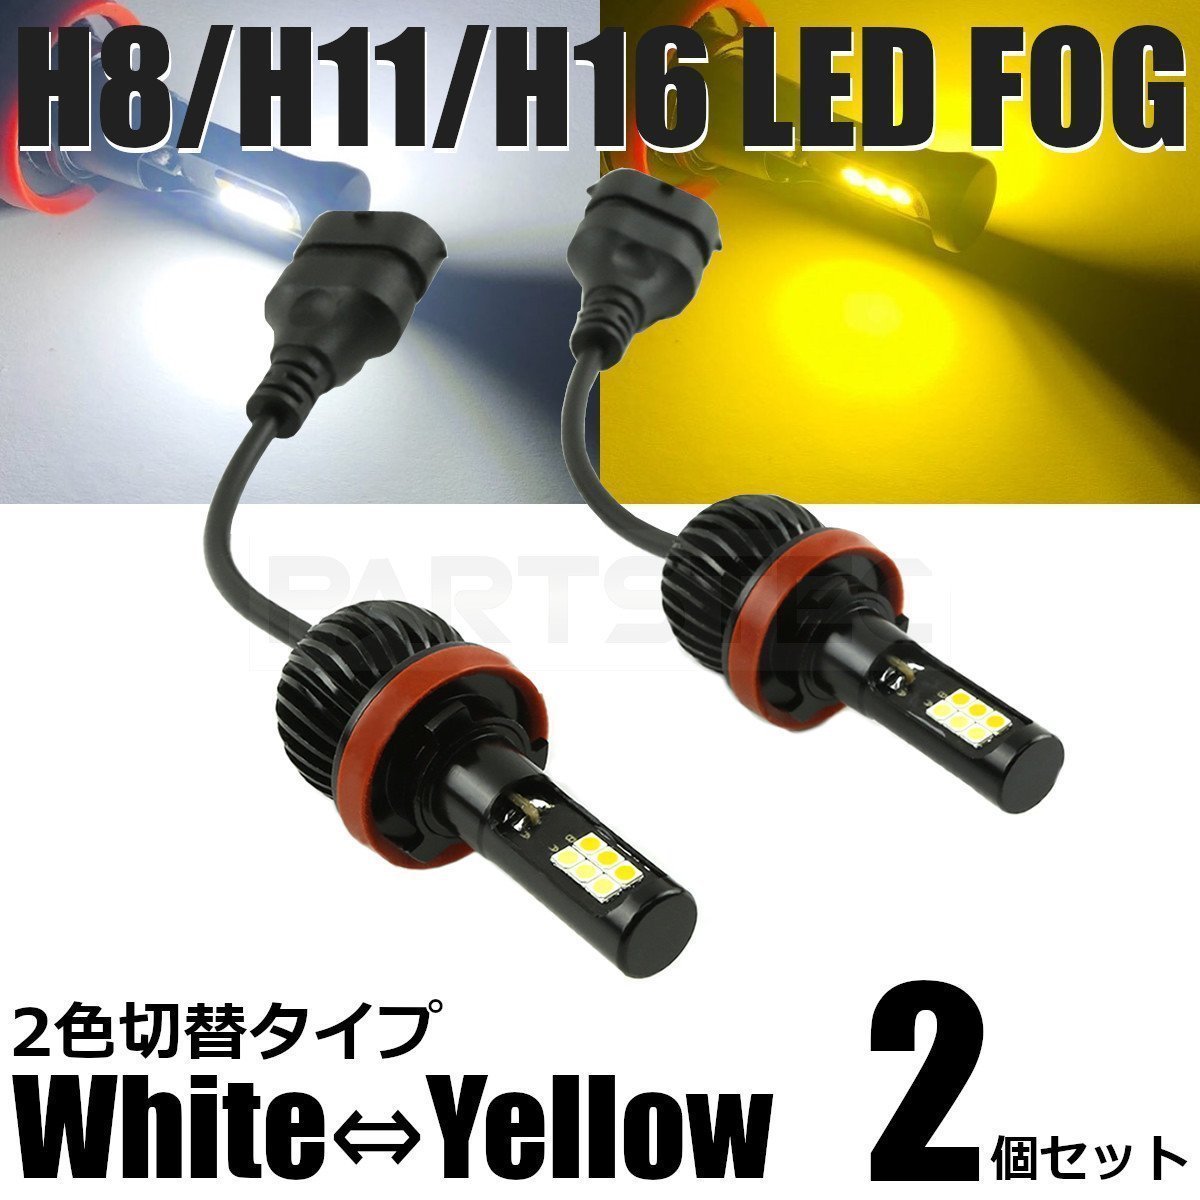 マークＸ 130系 LED フォグ H8/H11/H16 バルブ 2個 2色切替 白/黄色 40W級 5200lm デュアルカラー /134-53 A-1_画像1